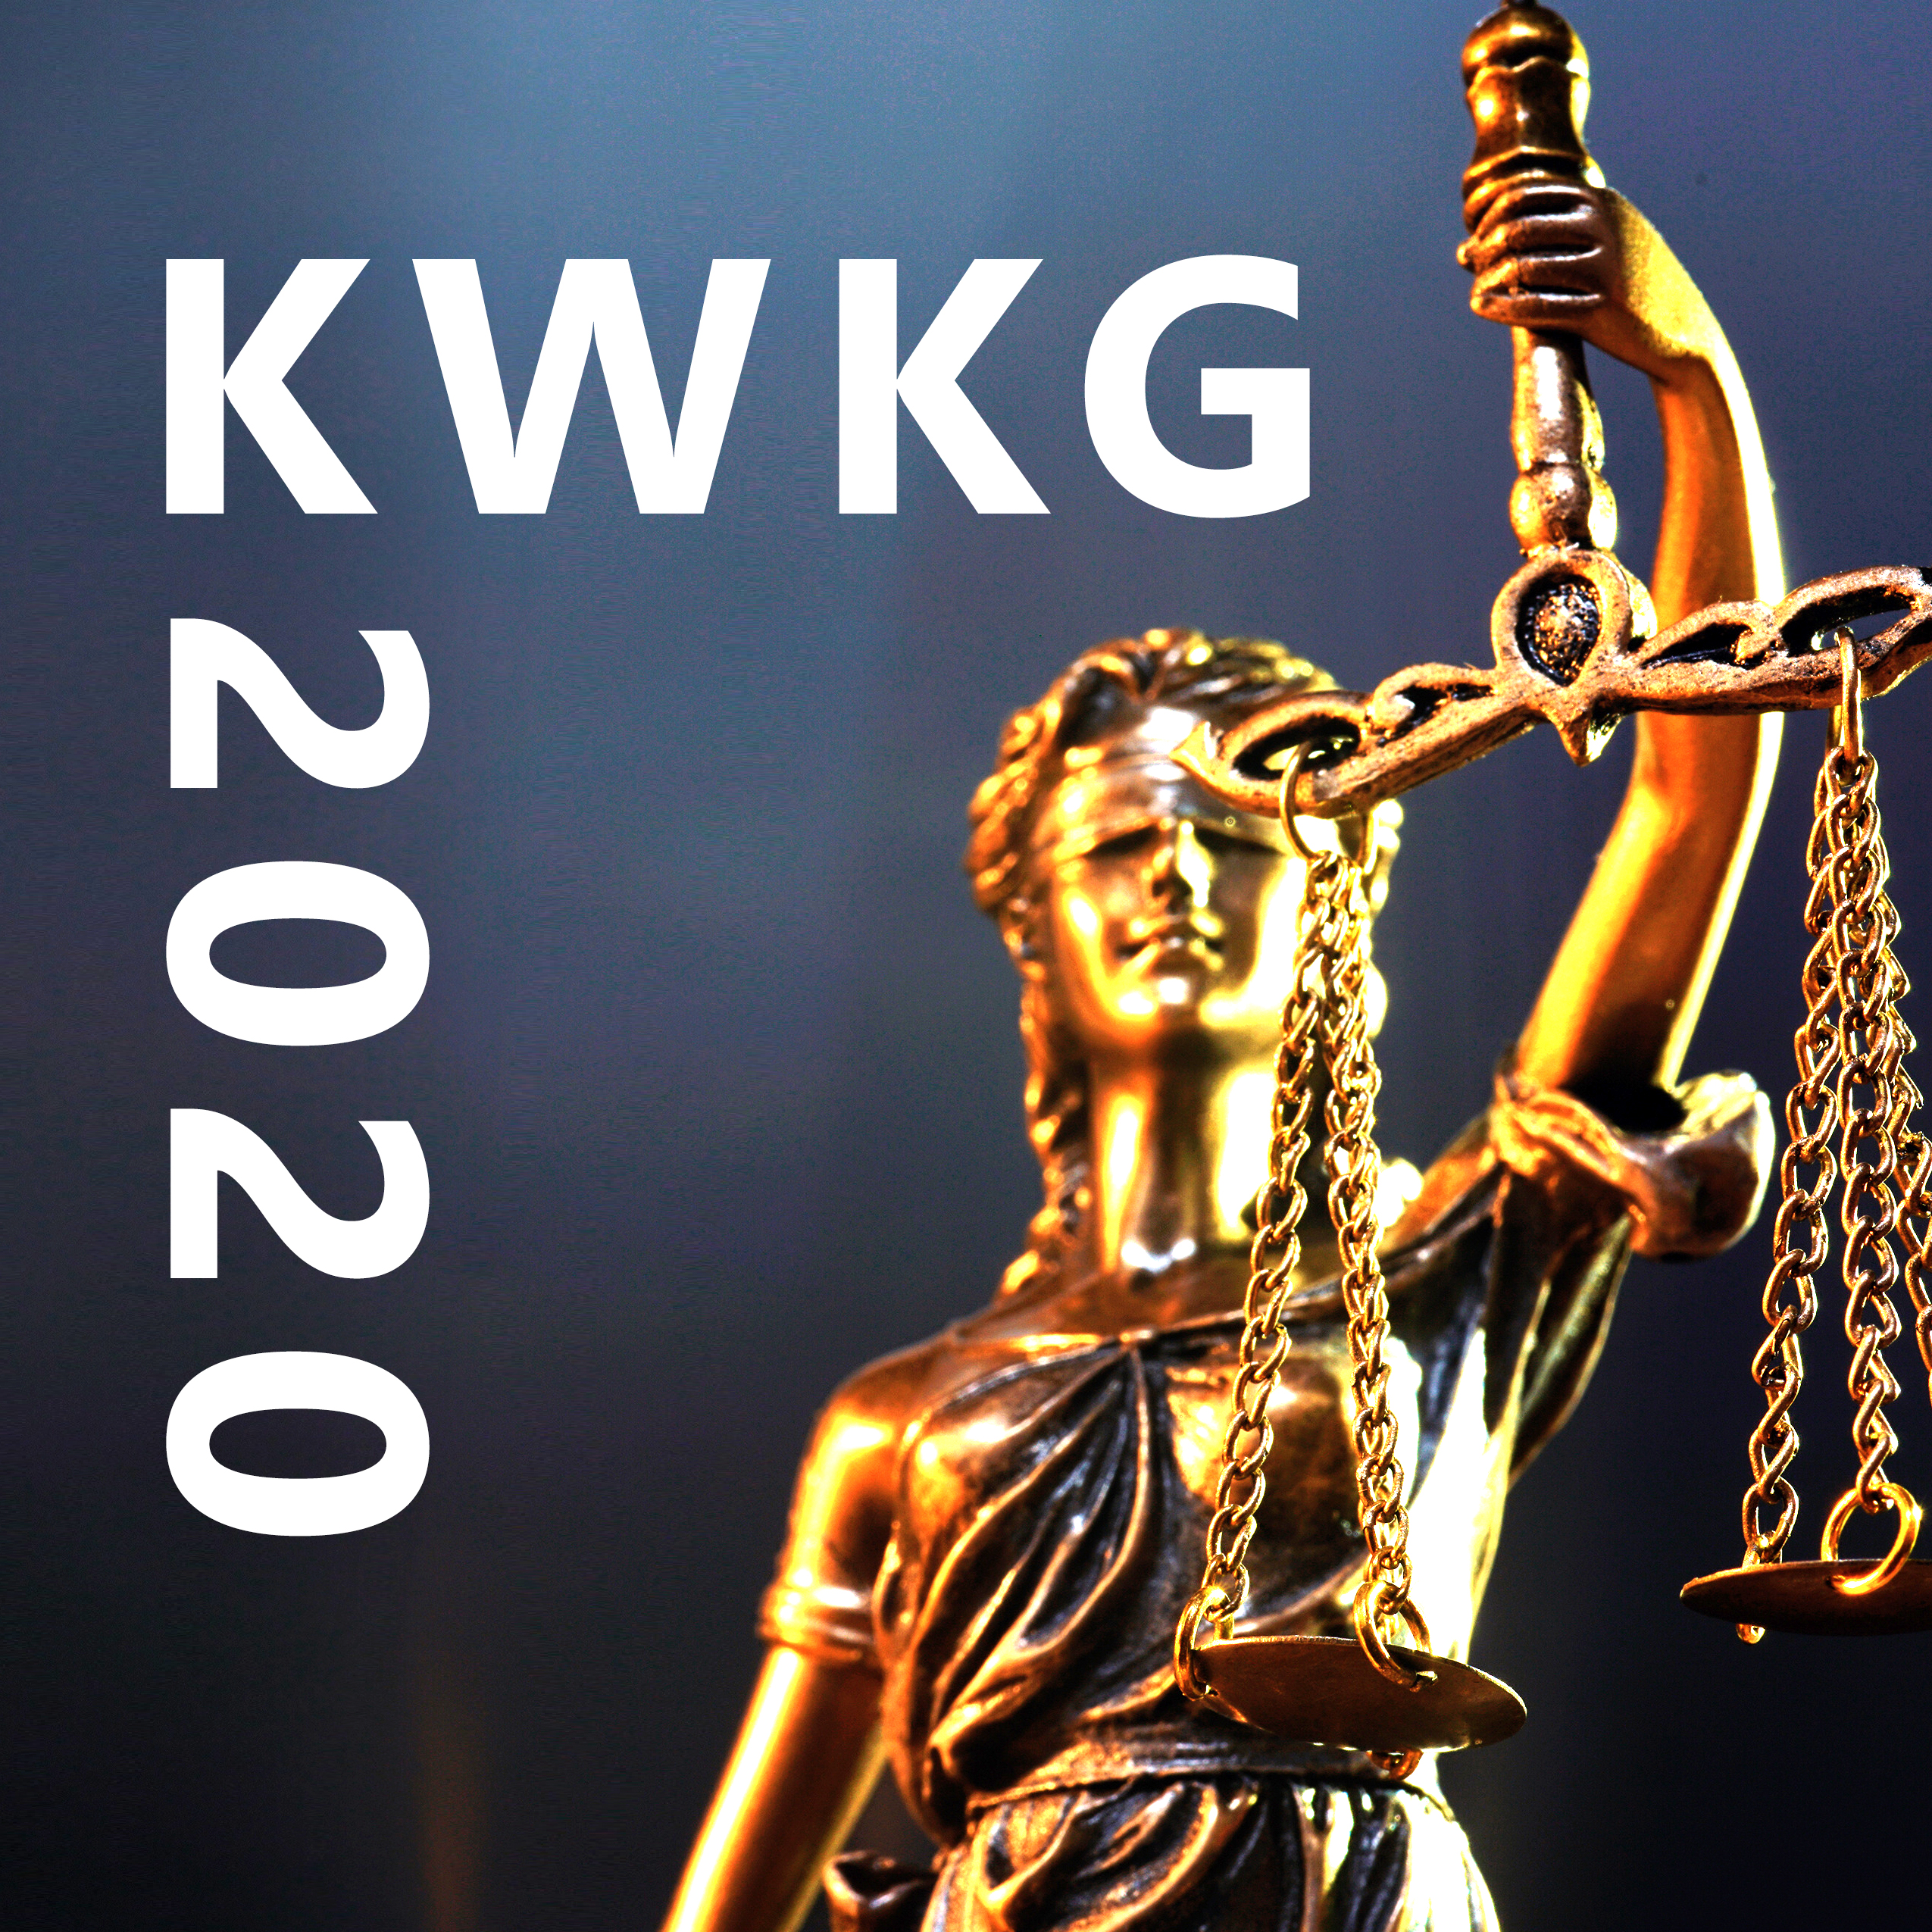 Neues Kwk Gesetz Kwkg 2020 Im Fokus